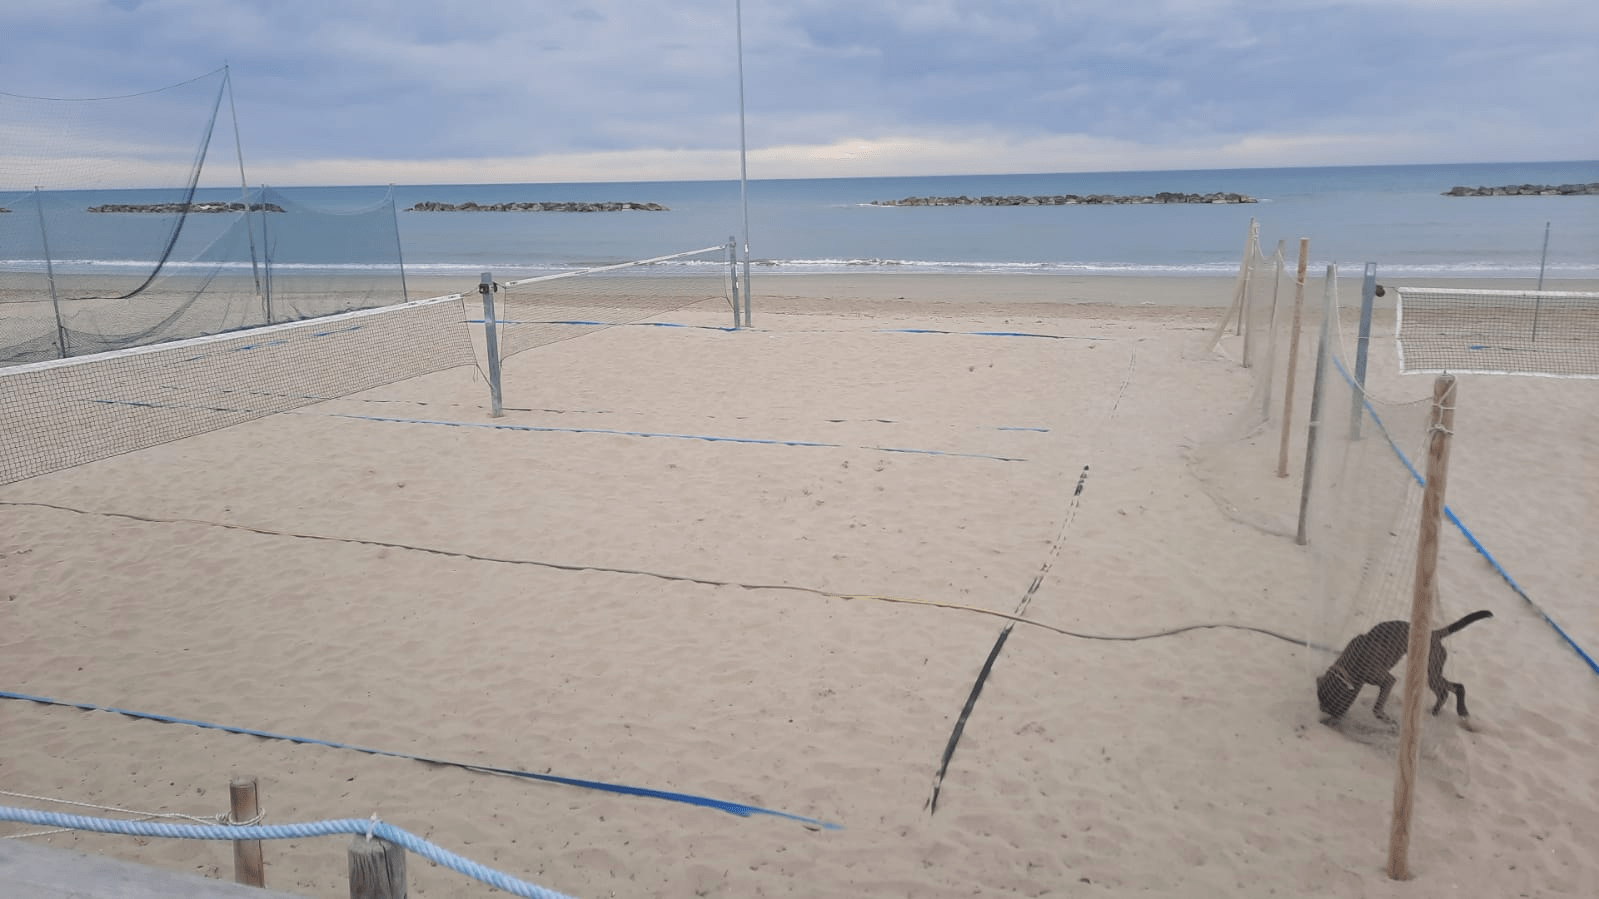 Beach Arena da smantellare: futuro appeso ad un filo